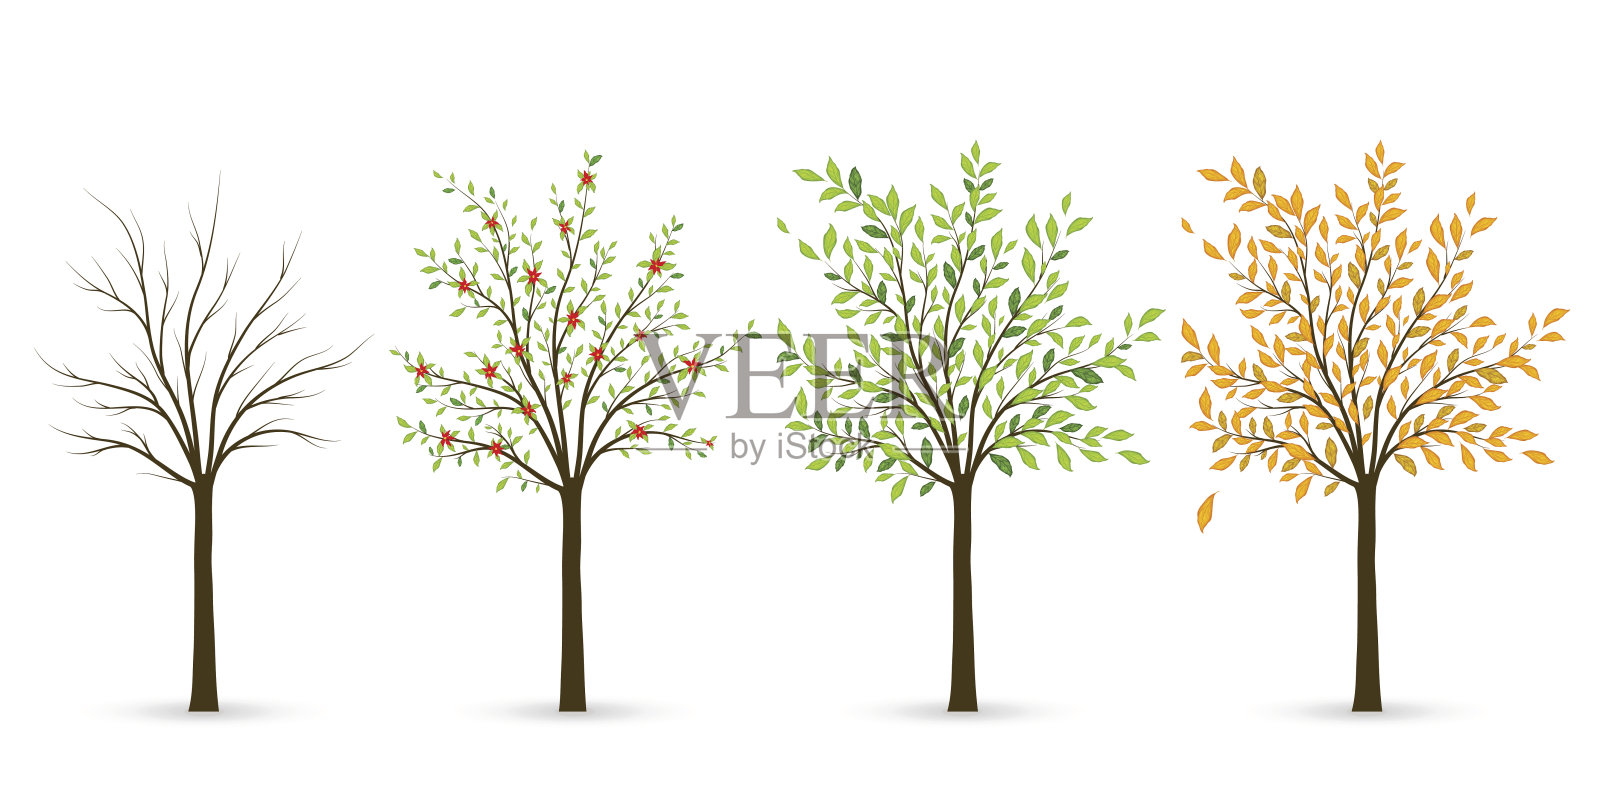 树分四季——冬、春、夏、秋。插画图片素材